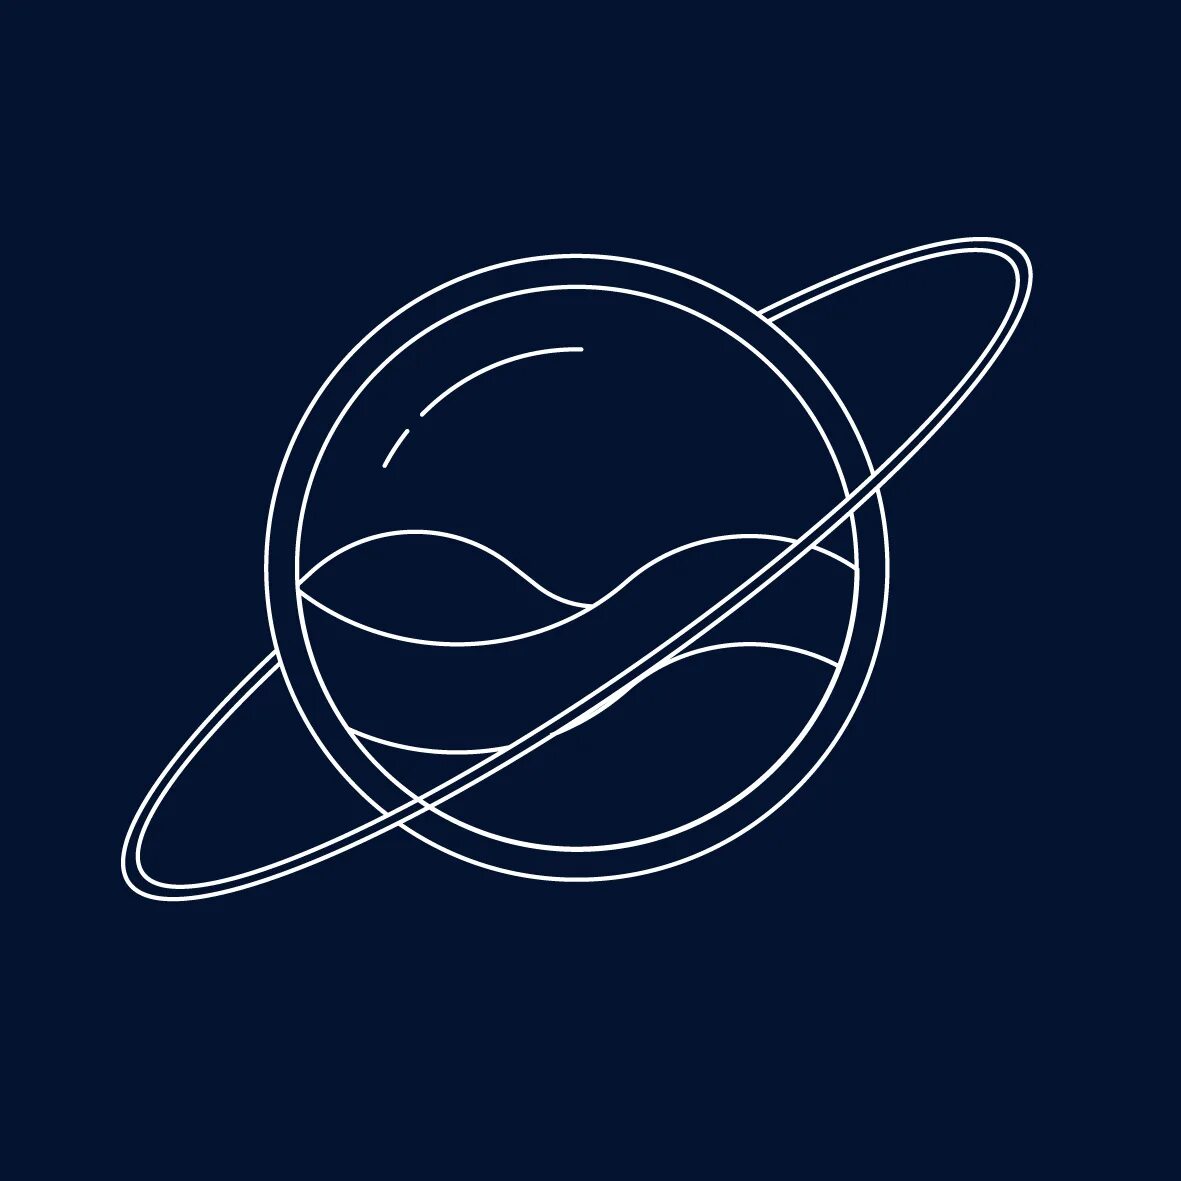 Космический логотип. Эмблемы связанные с космосом. Логотип Космическая тема. Логотип в космическом стиле. Эмблема космос